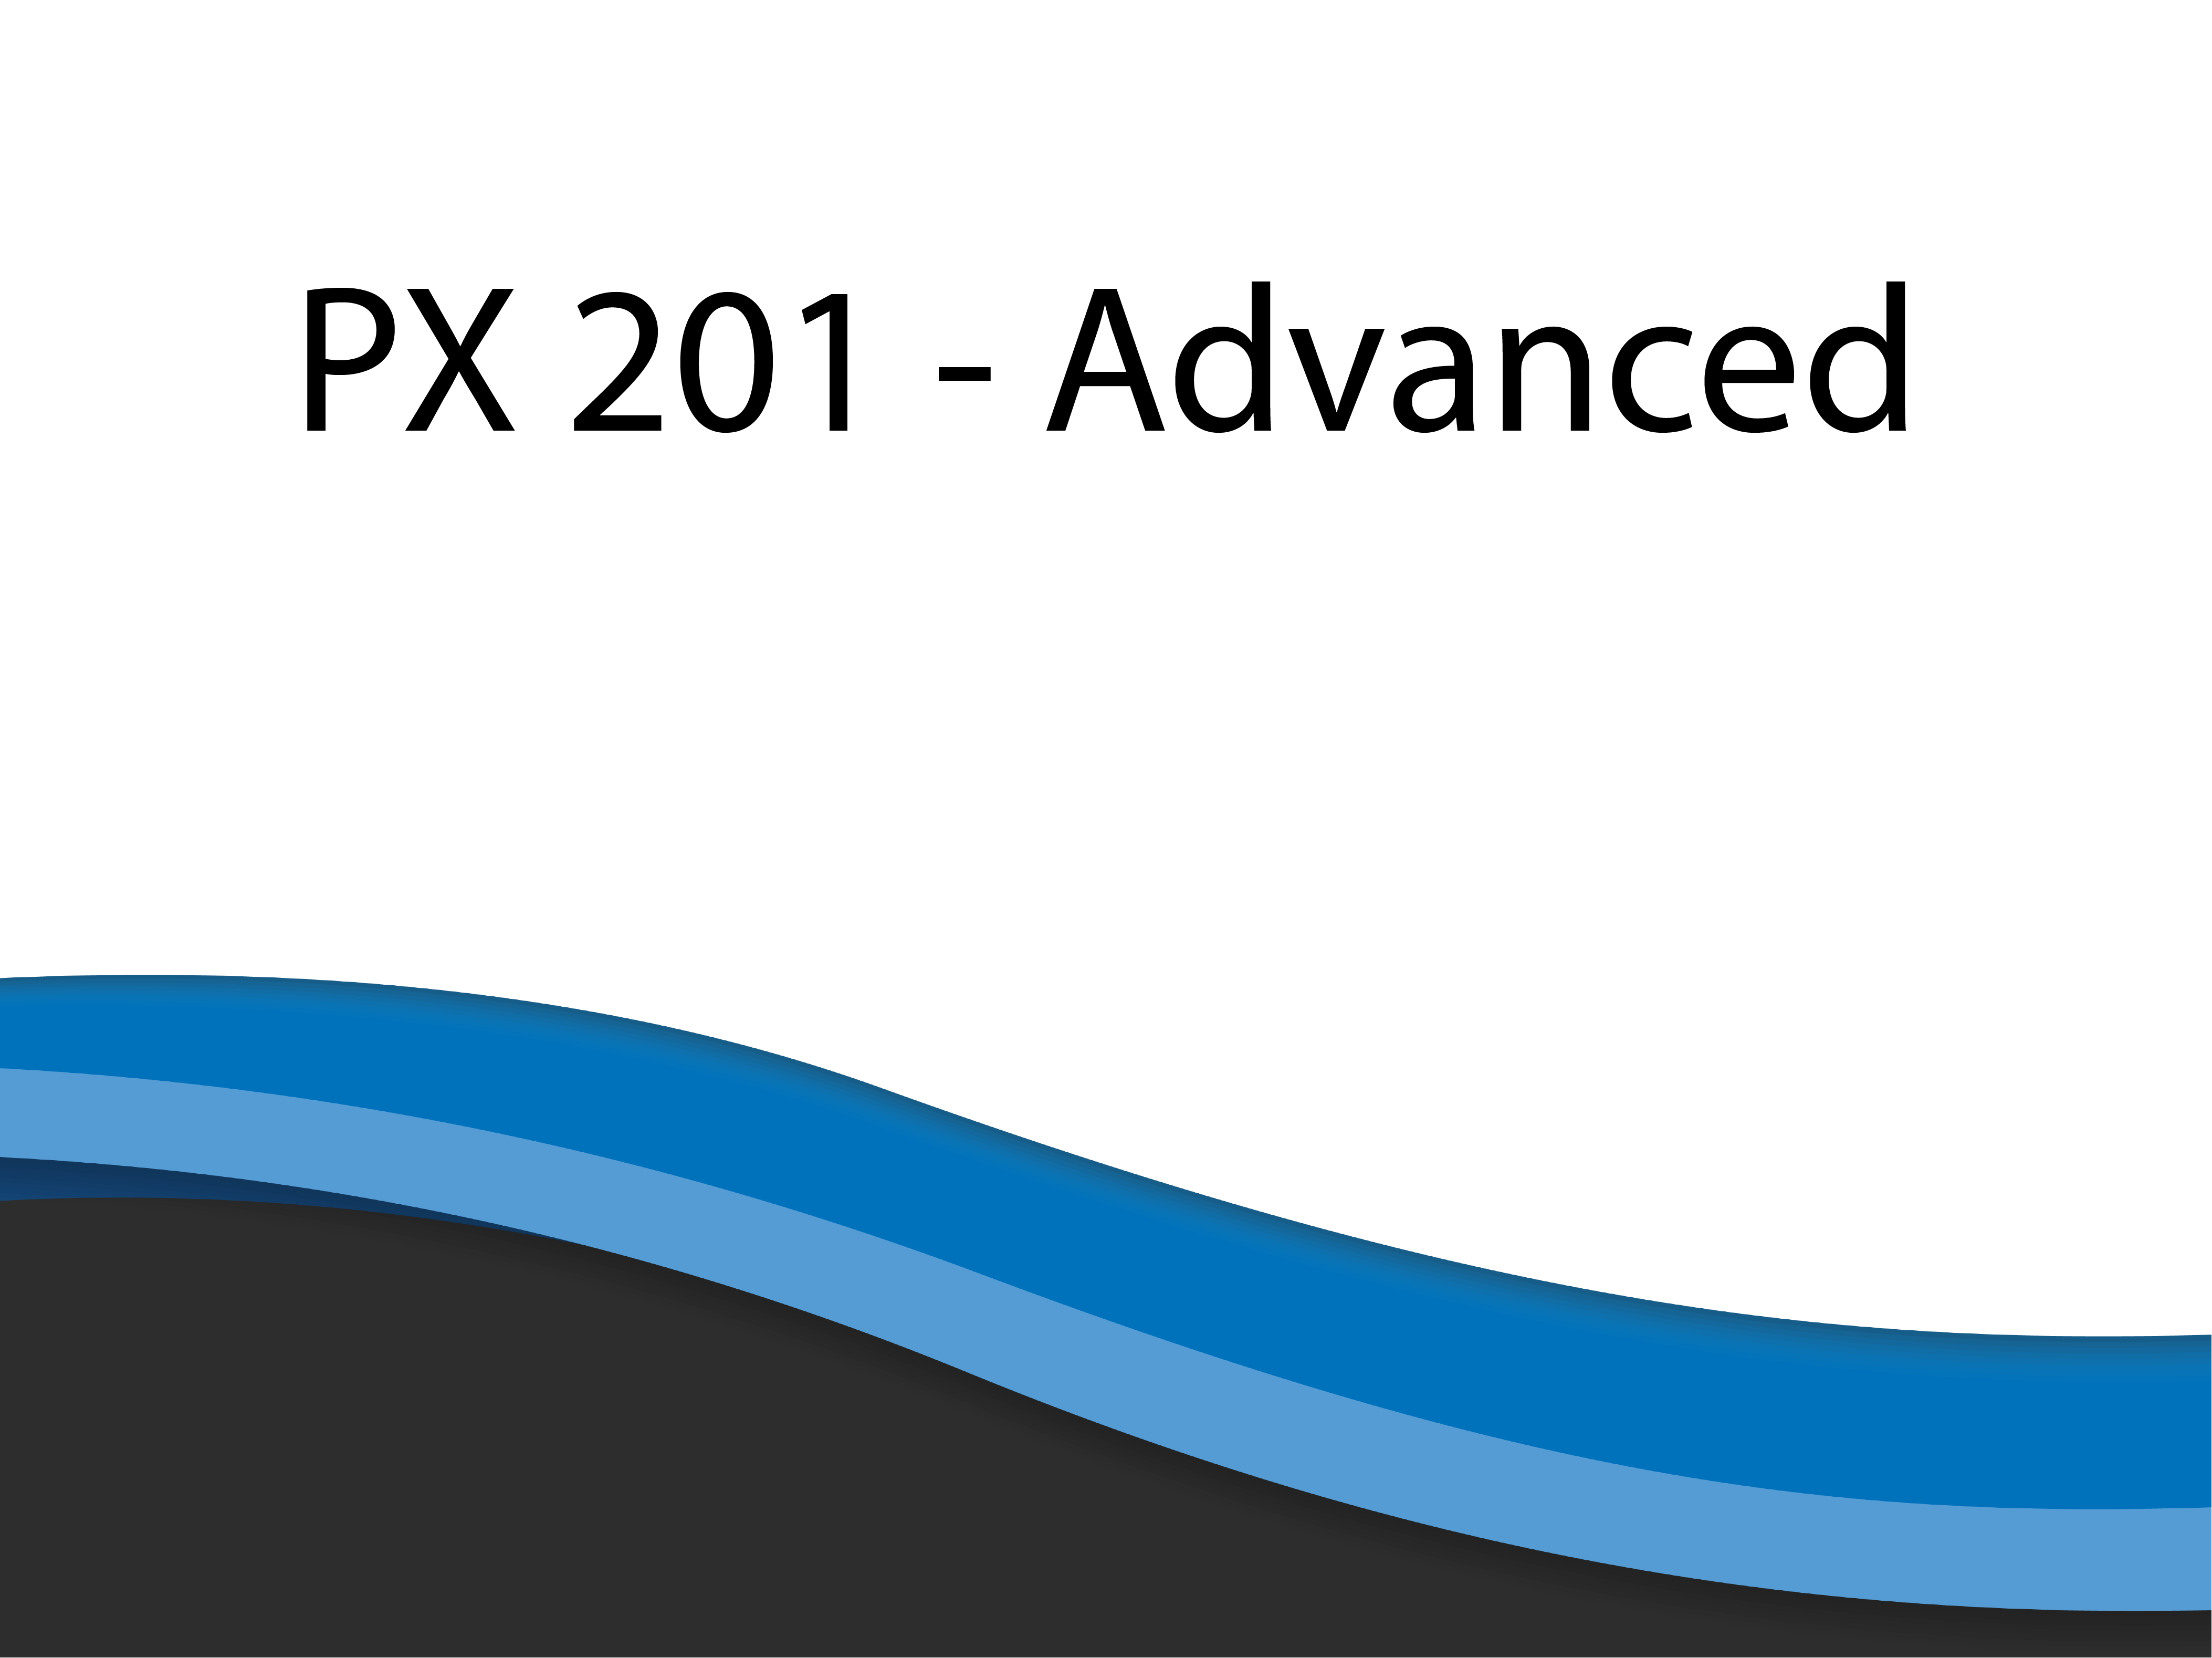 PX 201 – Power Practice Advanced